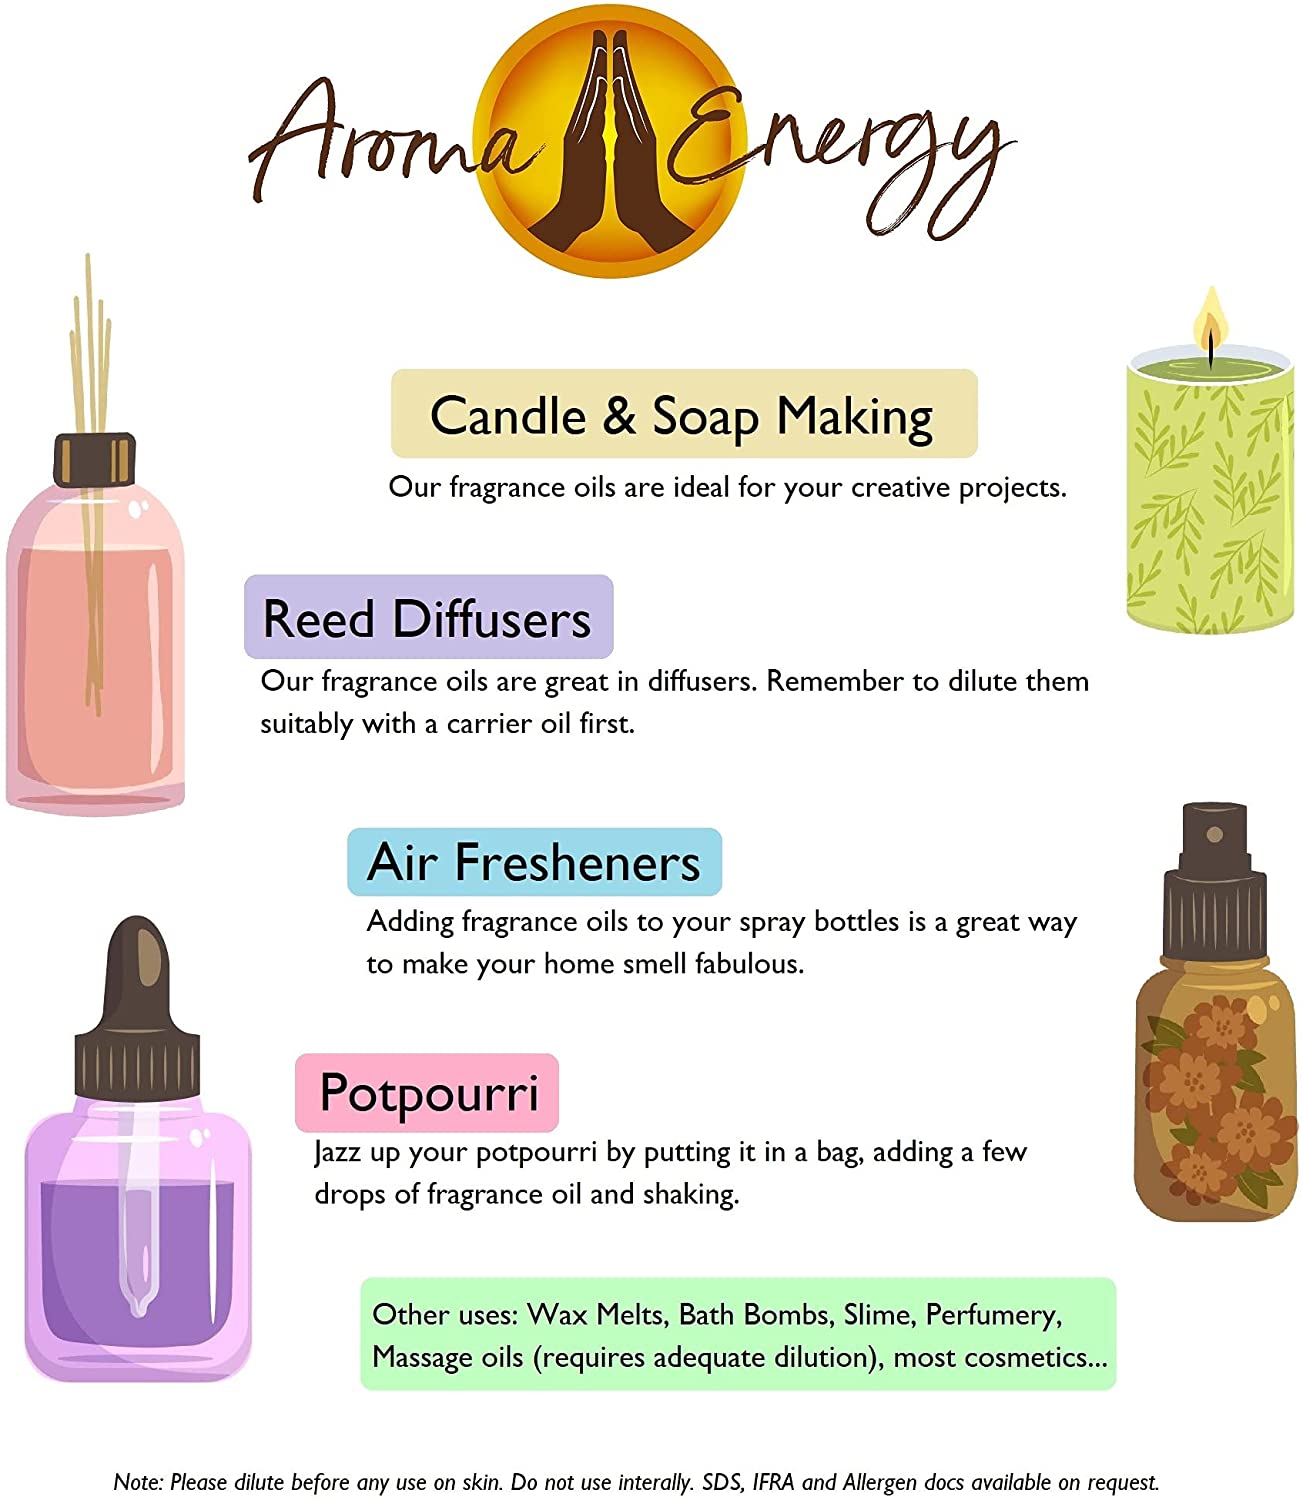 Jasmine Fragrance Oil - Aroma Energy